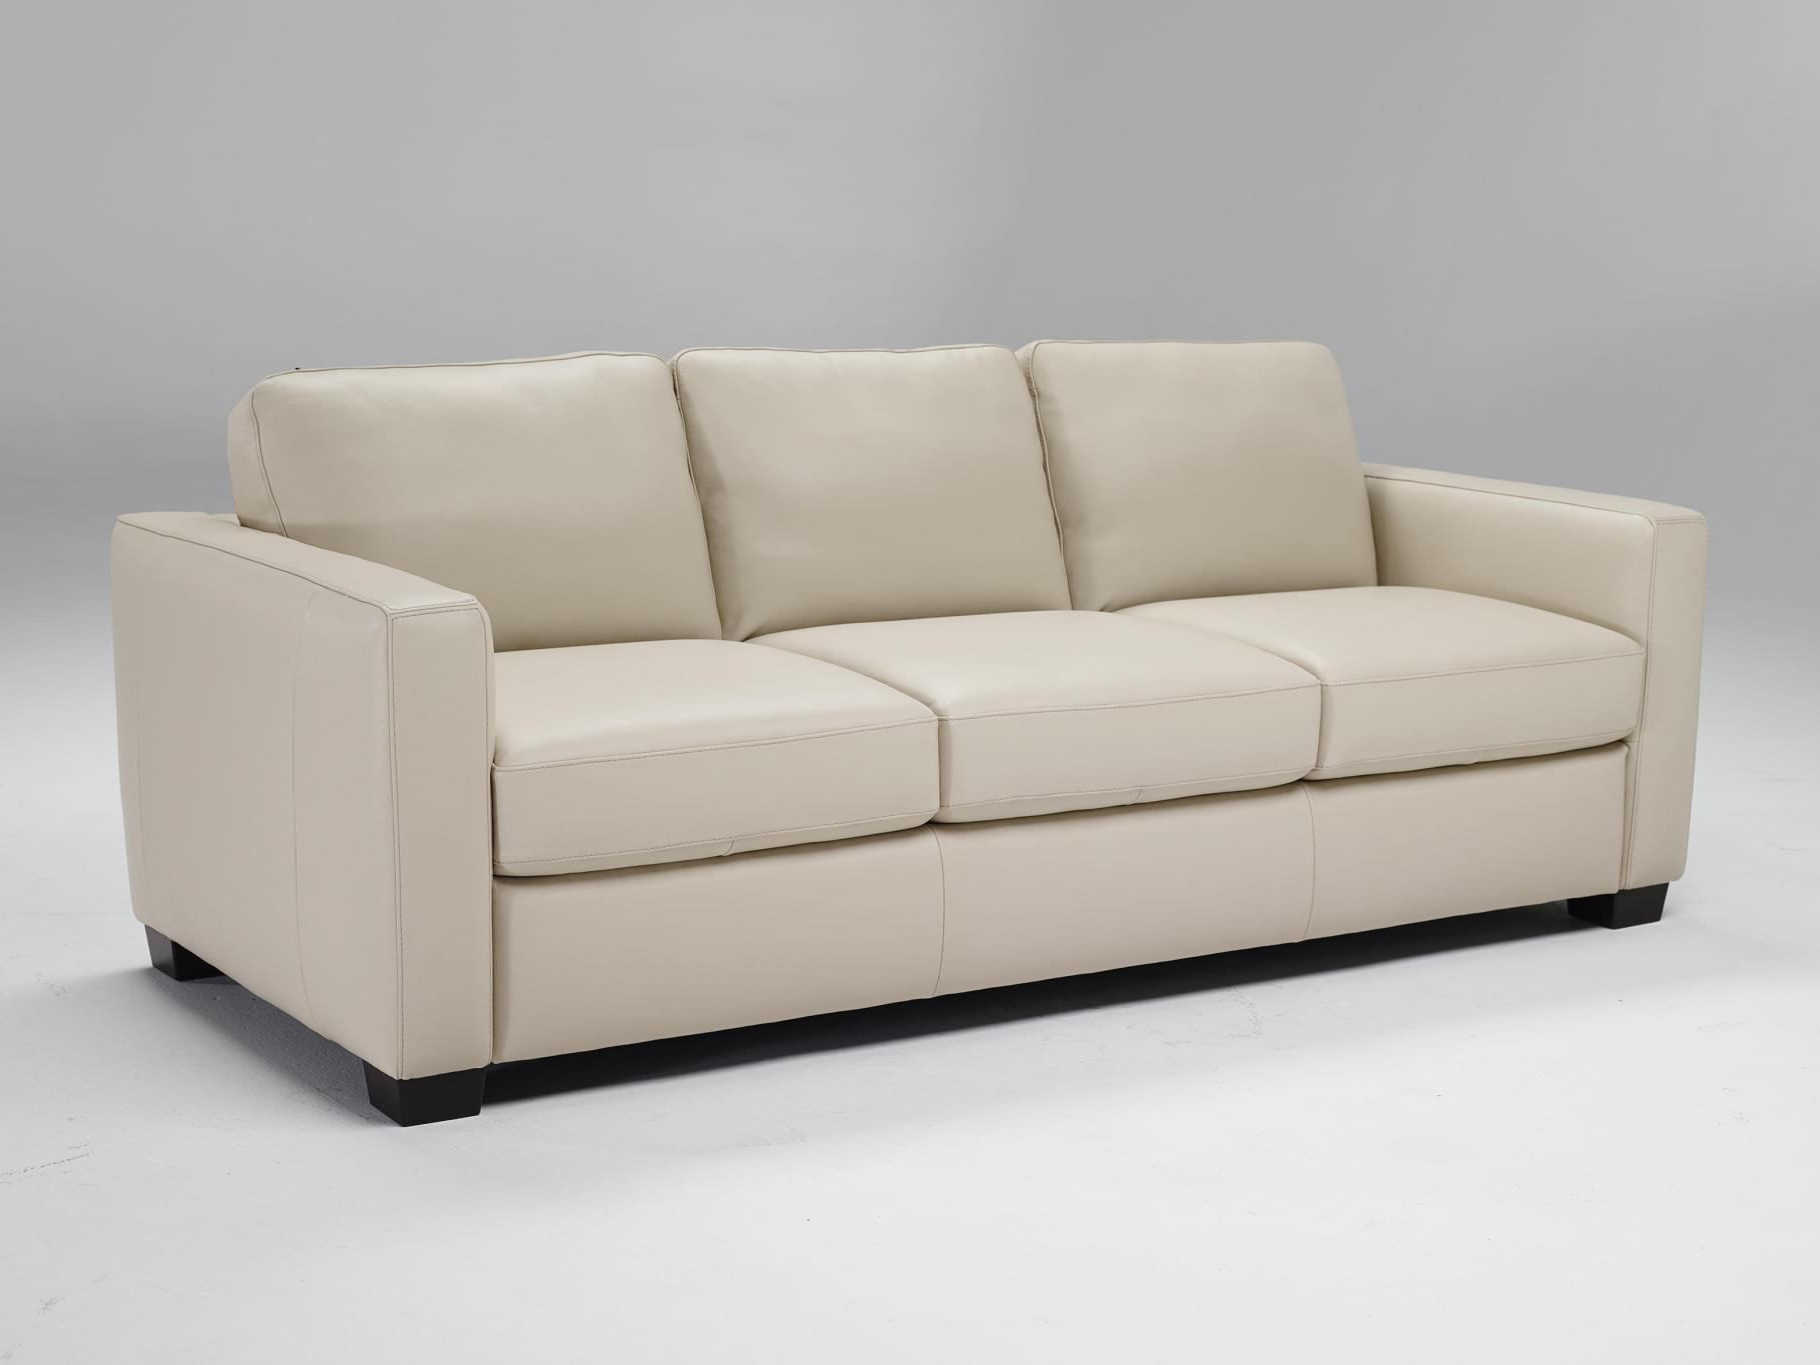 natuzzi roma leather sofa